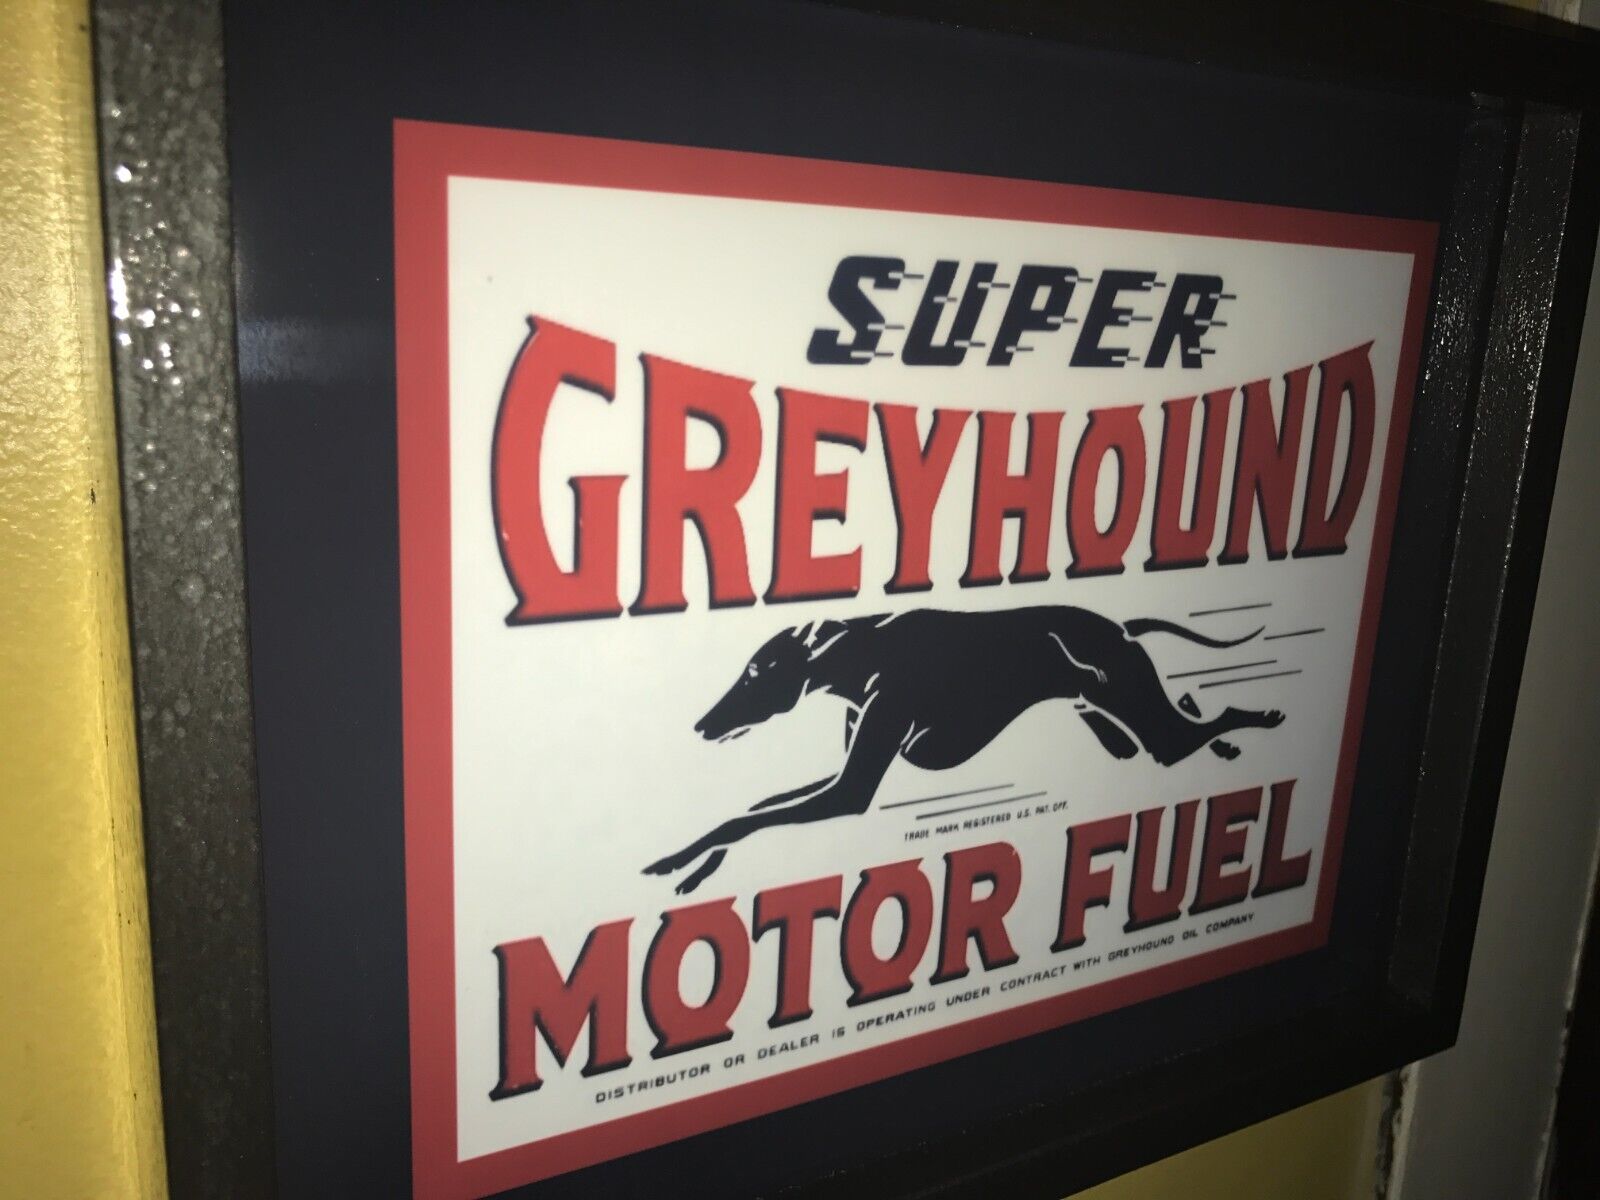 Super Greyhound Motor Oil Fuel Dog Garage Gas Station Lighted Man Cave Bar Sign